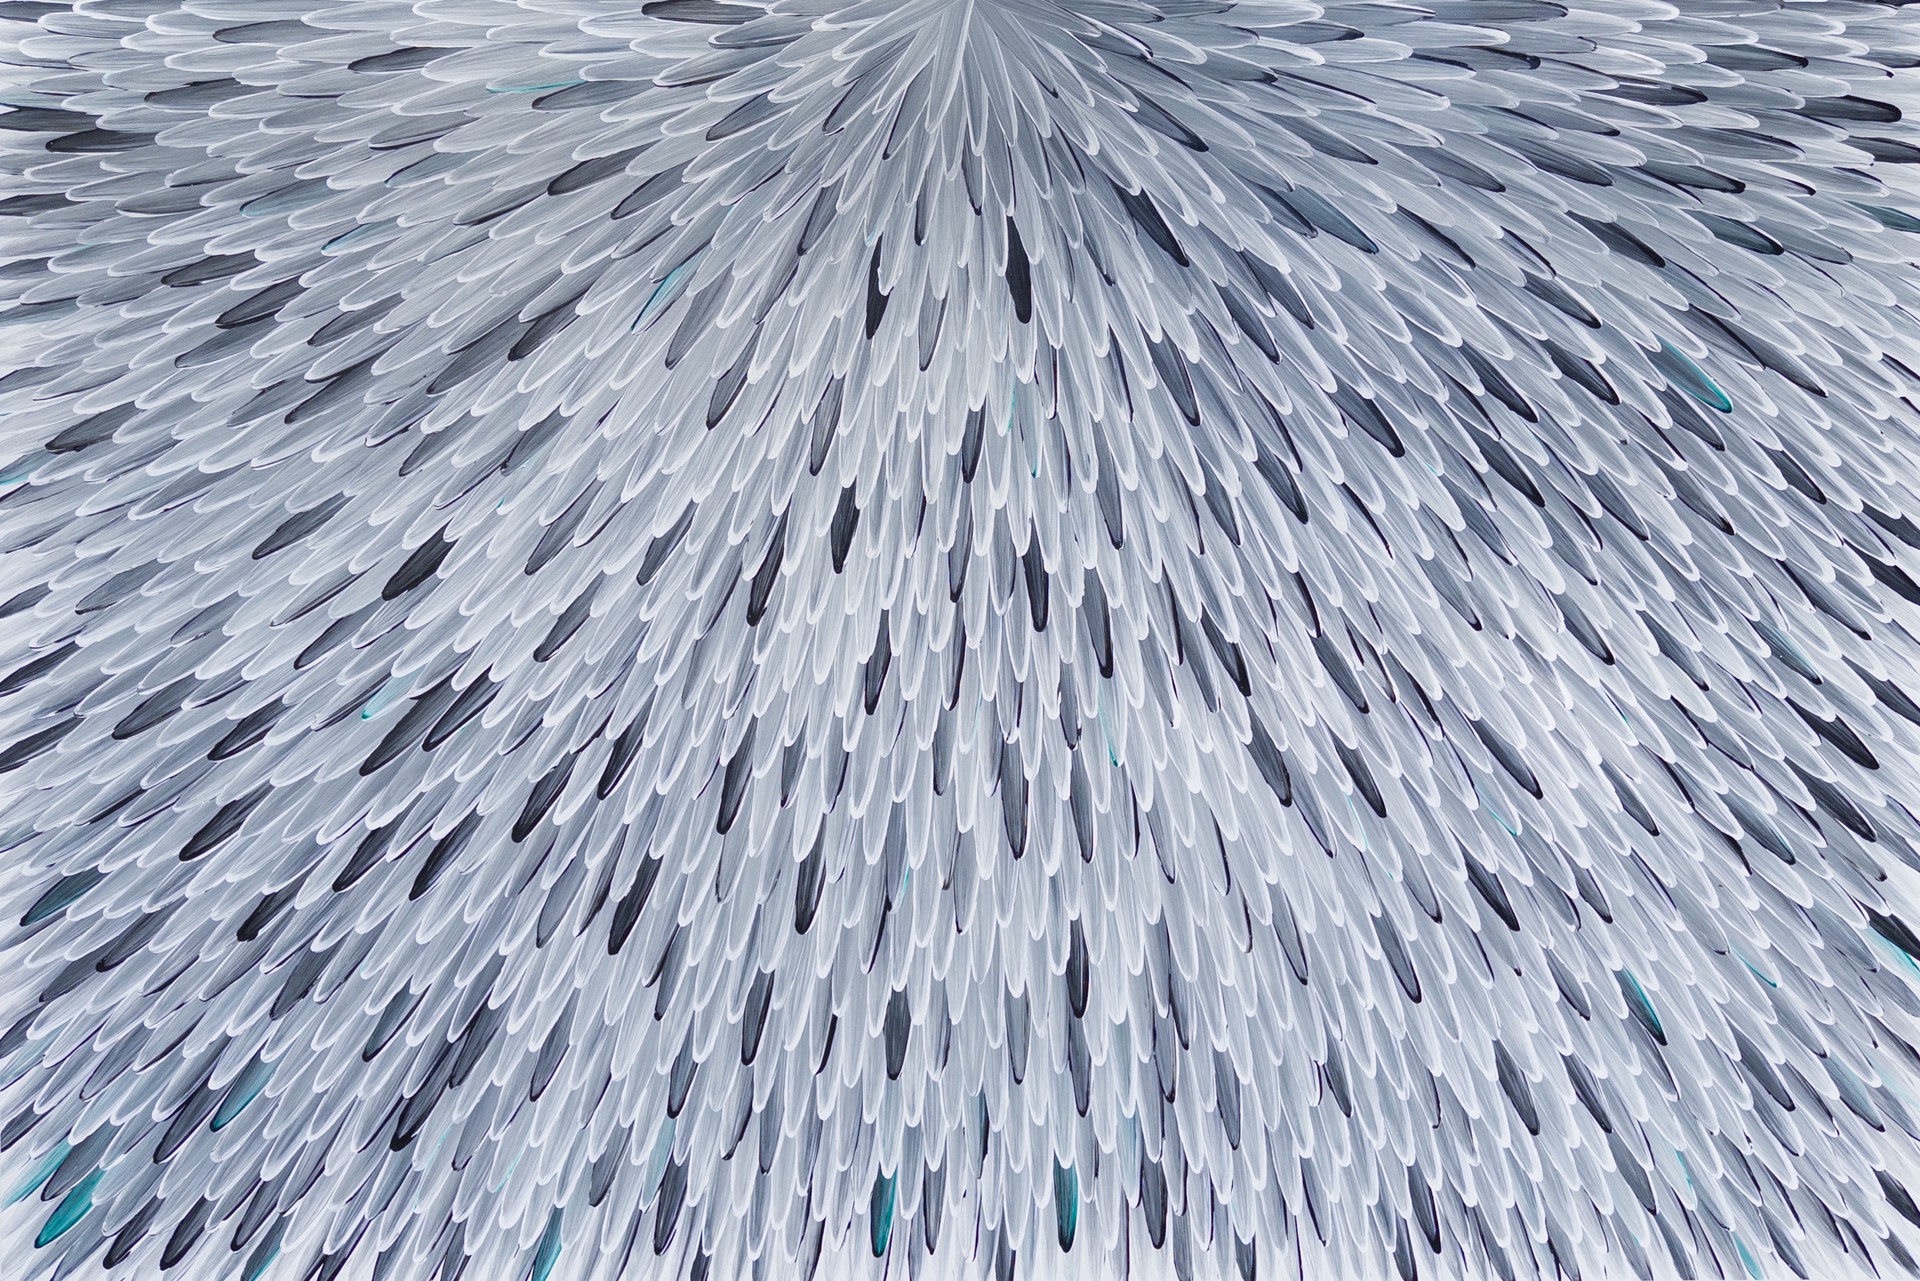 Ankerre Jukurrpa (Emu Feathers) by Raymond Walters Penangke